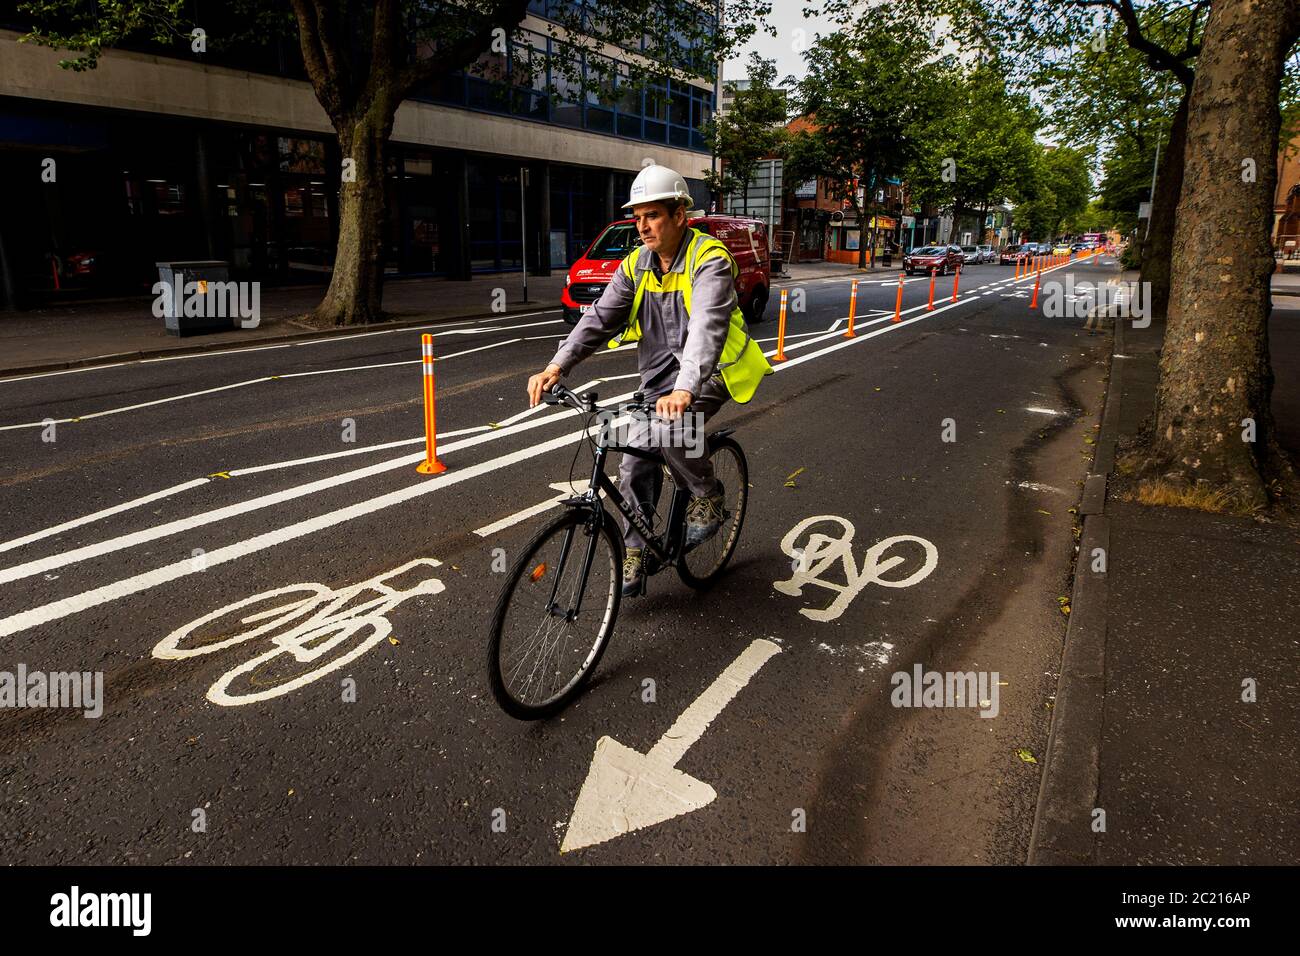 Un cycliste utilise la nouvelle allée de vélo pop-up sur Dublin Road à Belfast. La ministre de l'infrastructure, Nichols Mallon, a annoncé la semaine dernière que des pistes cyclables pop-up devaient être introduites à Belfast. Banque D'Images